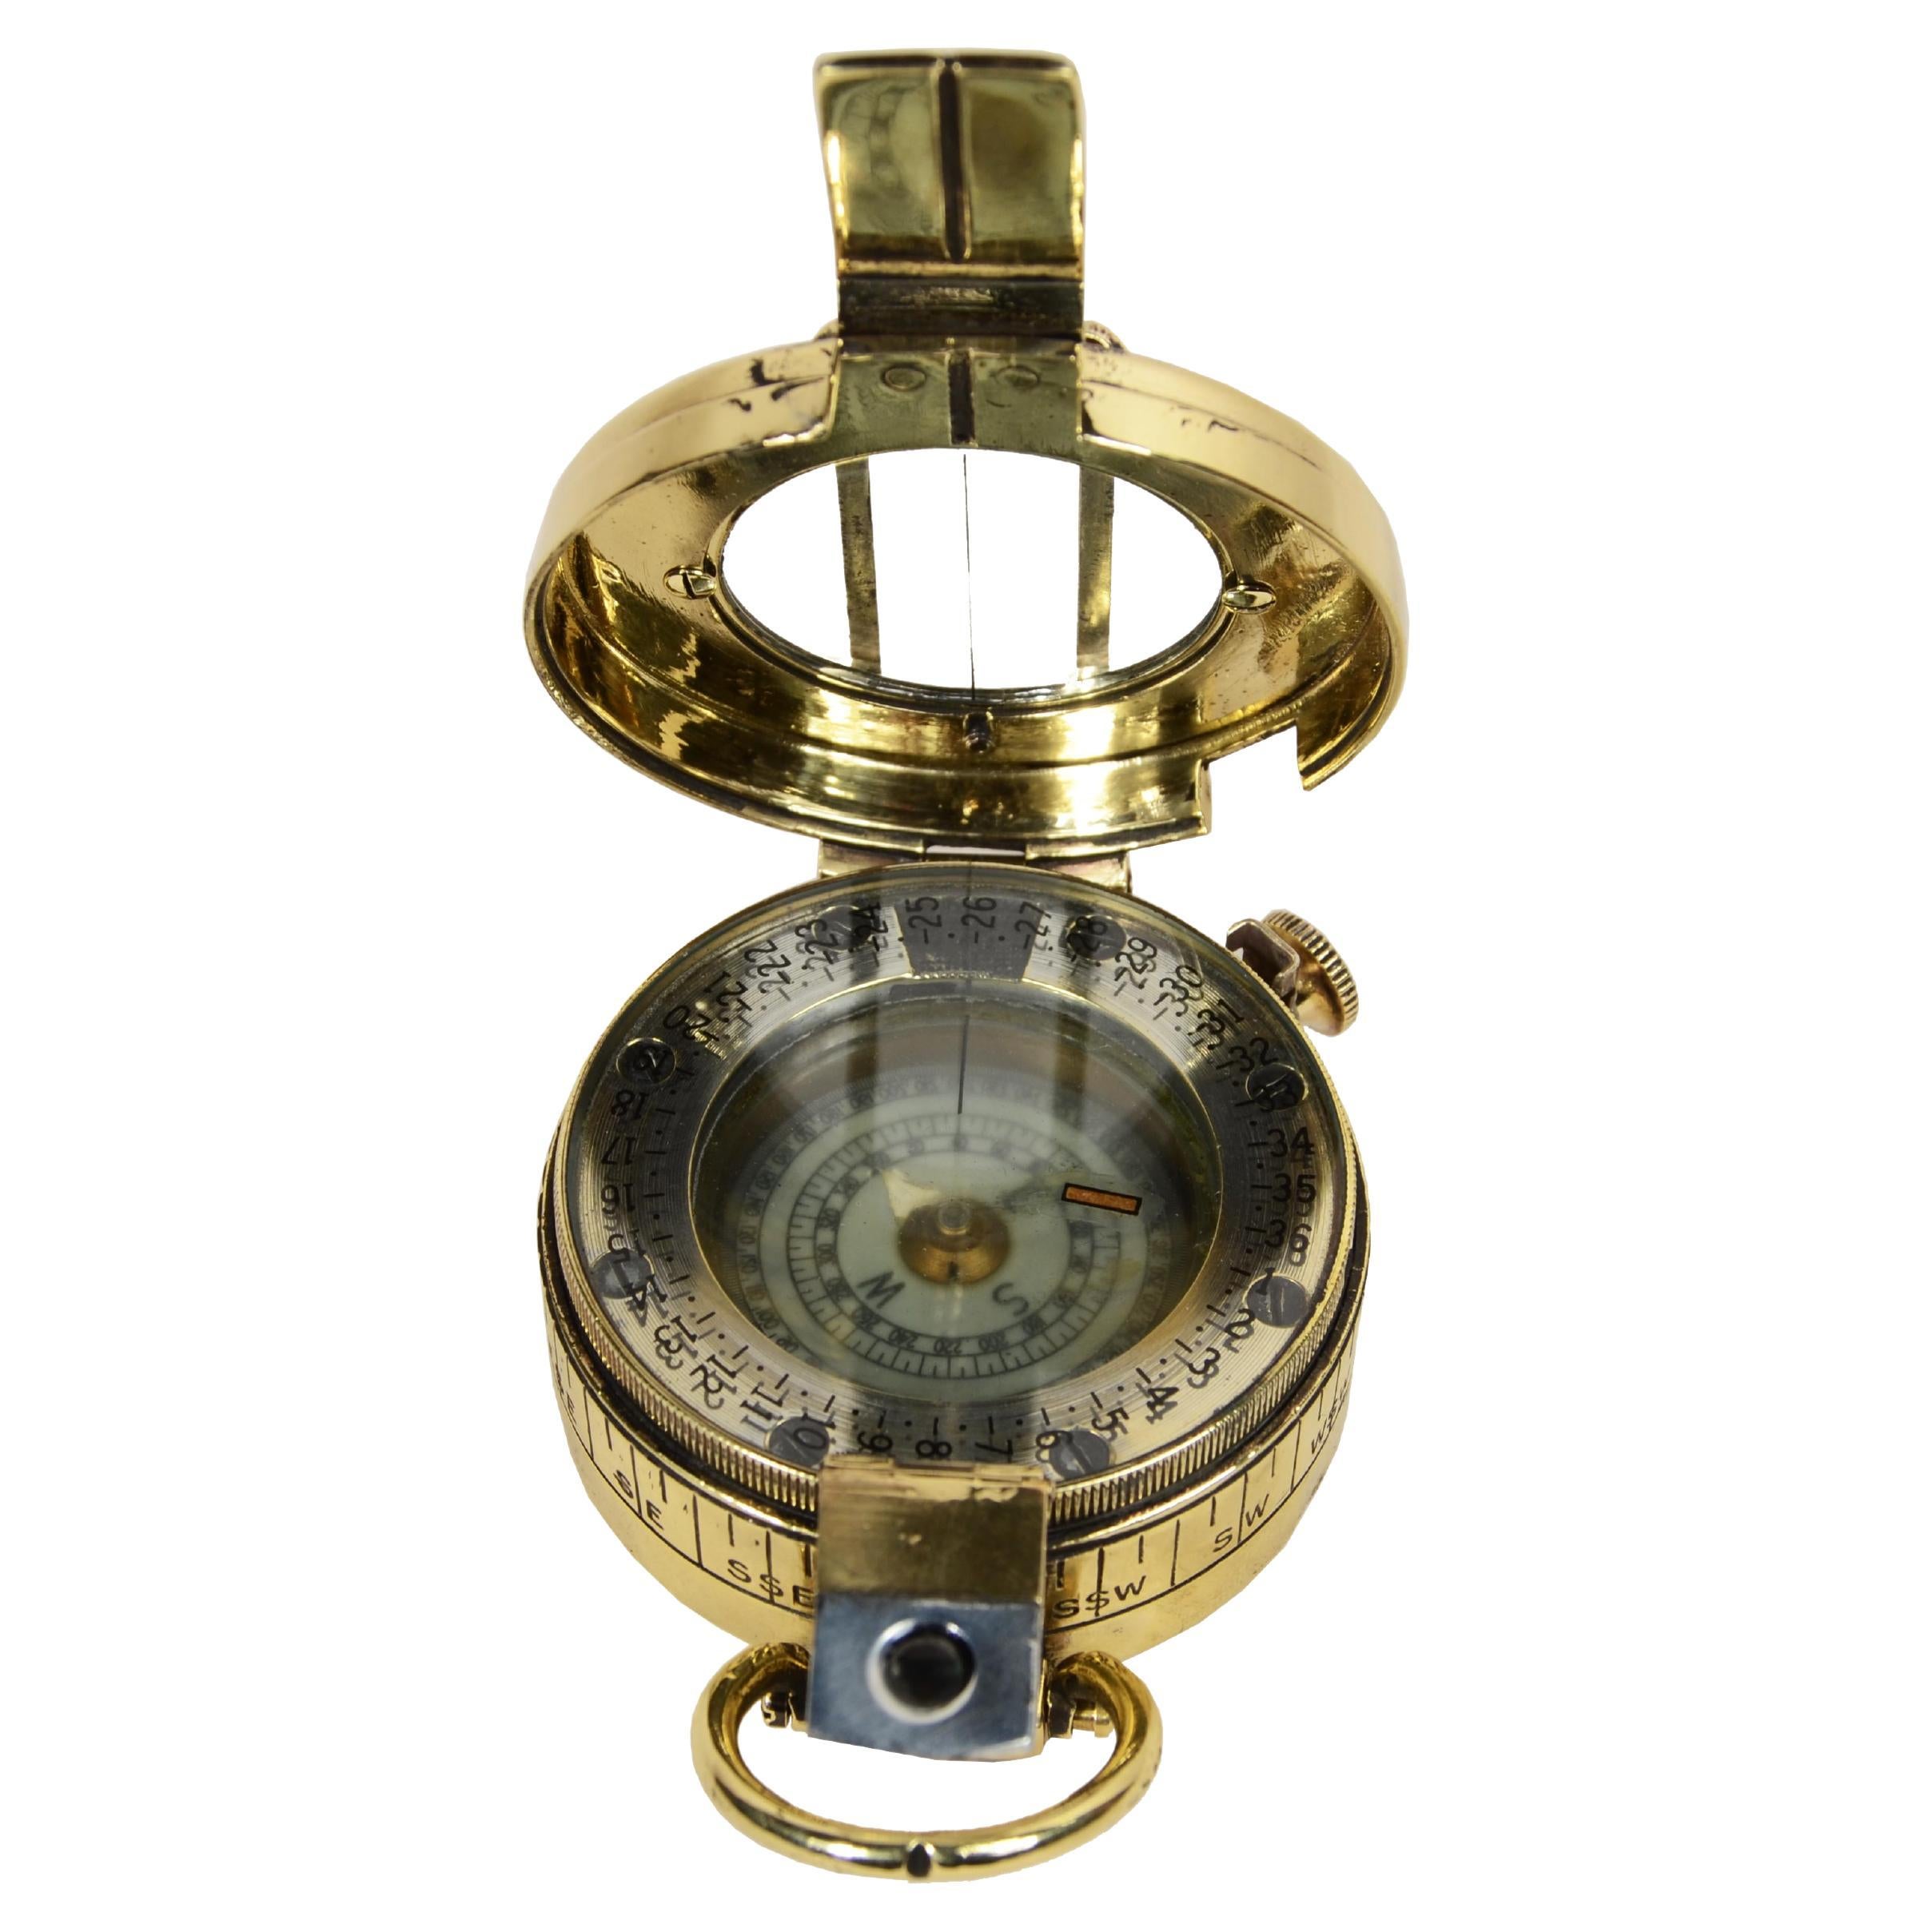 Prismatischer Kompass  durch Erkennung signiert T.G. Co. Ltd London Nr. B 21681 1940 MK